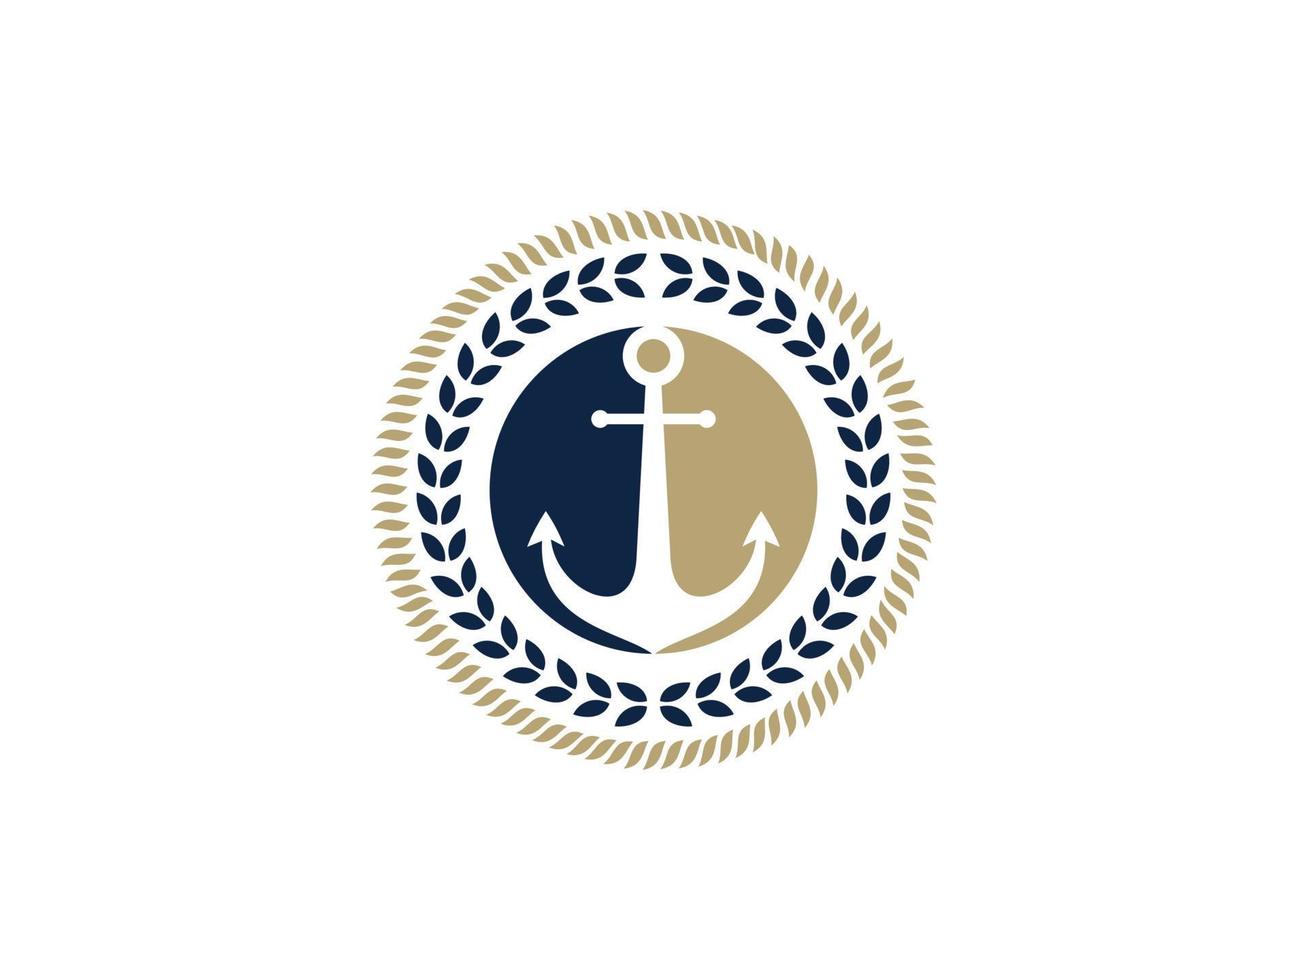 ancre, corde et couronne pour la conception du logo du bateau marin. utilisable pour les logos d'entreprise et de marque. élément de modèle de conception de logo vectoriel plat.